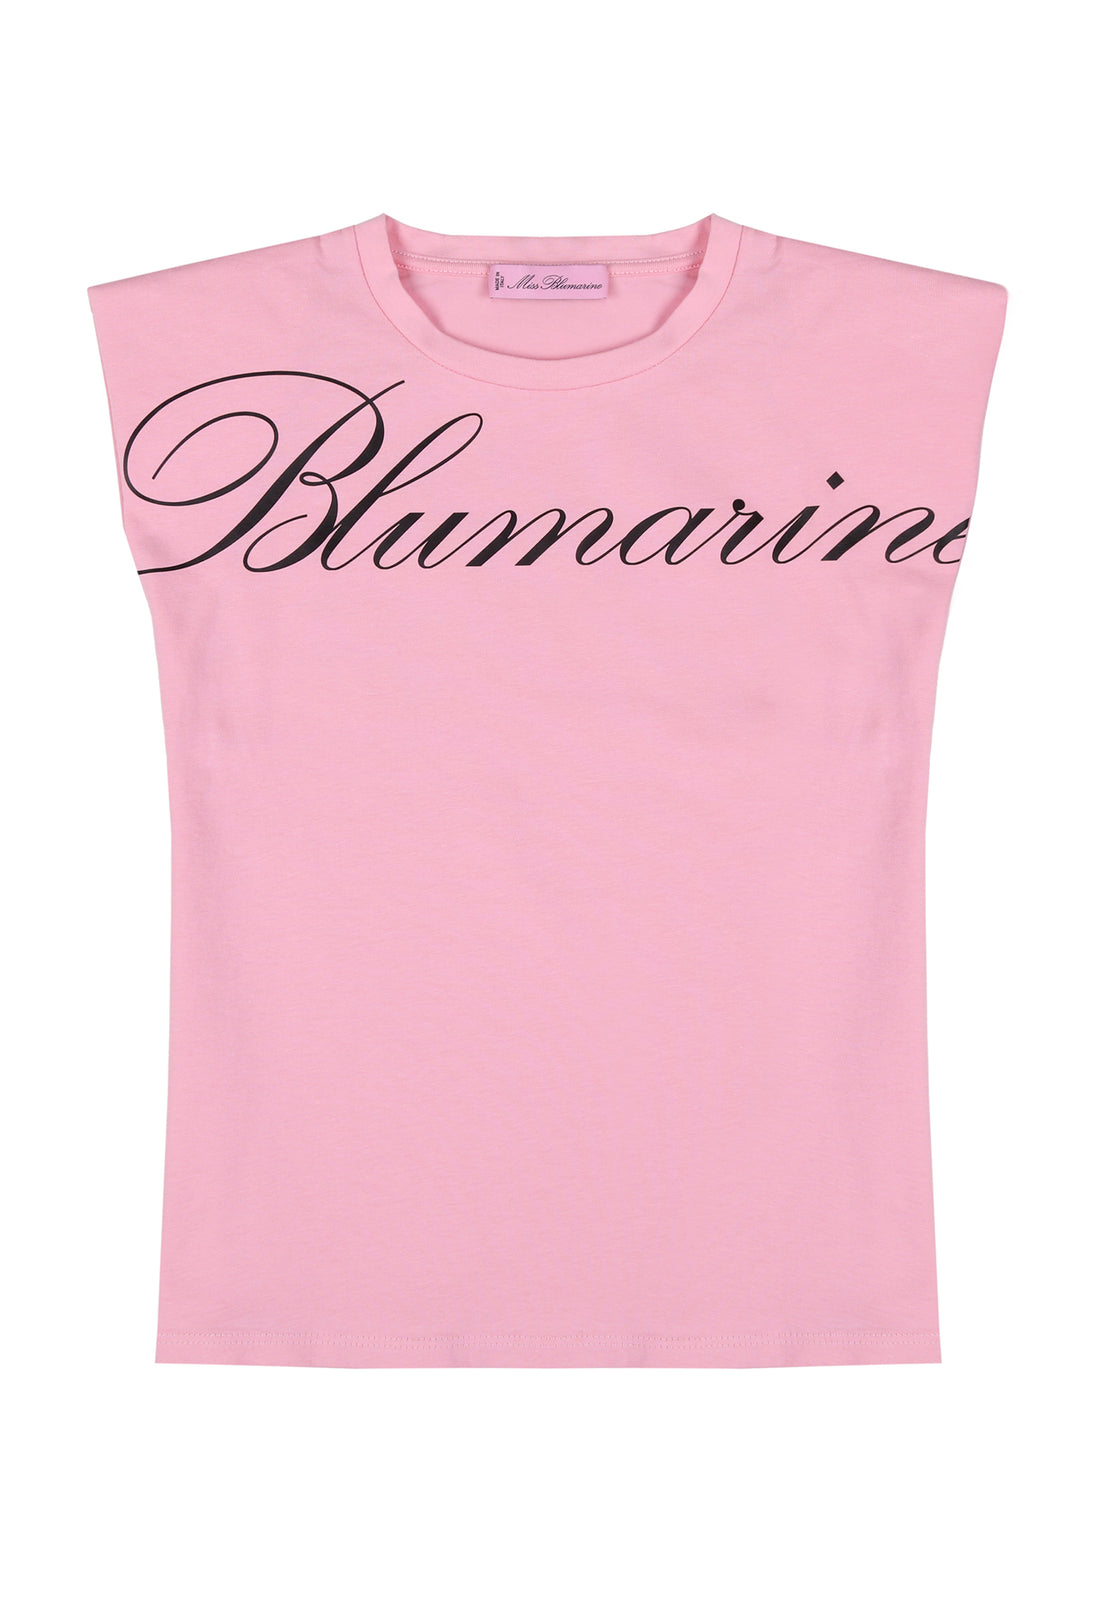 t-shirt materiał róż łączony MISS BLUMA MISS BLUMARINE 123 042J50 123/9Rc